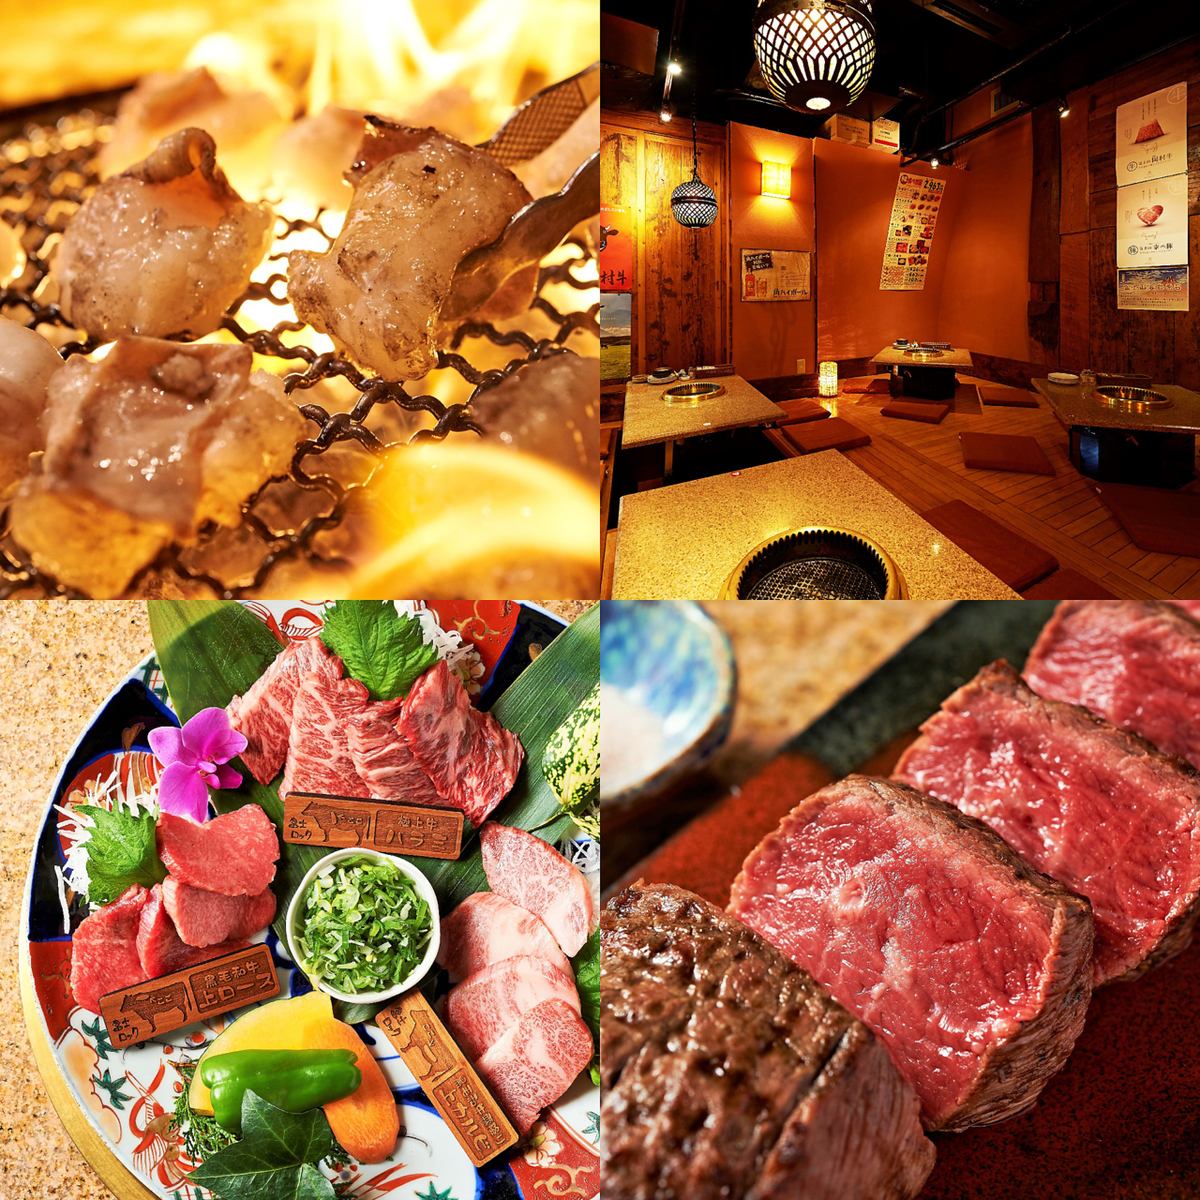 富士熔岩可以讓您品嚐到蓬鬆美味的烤肉★所有課程均可容納2人〜